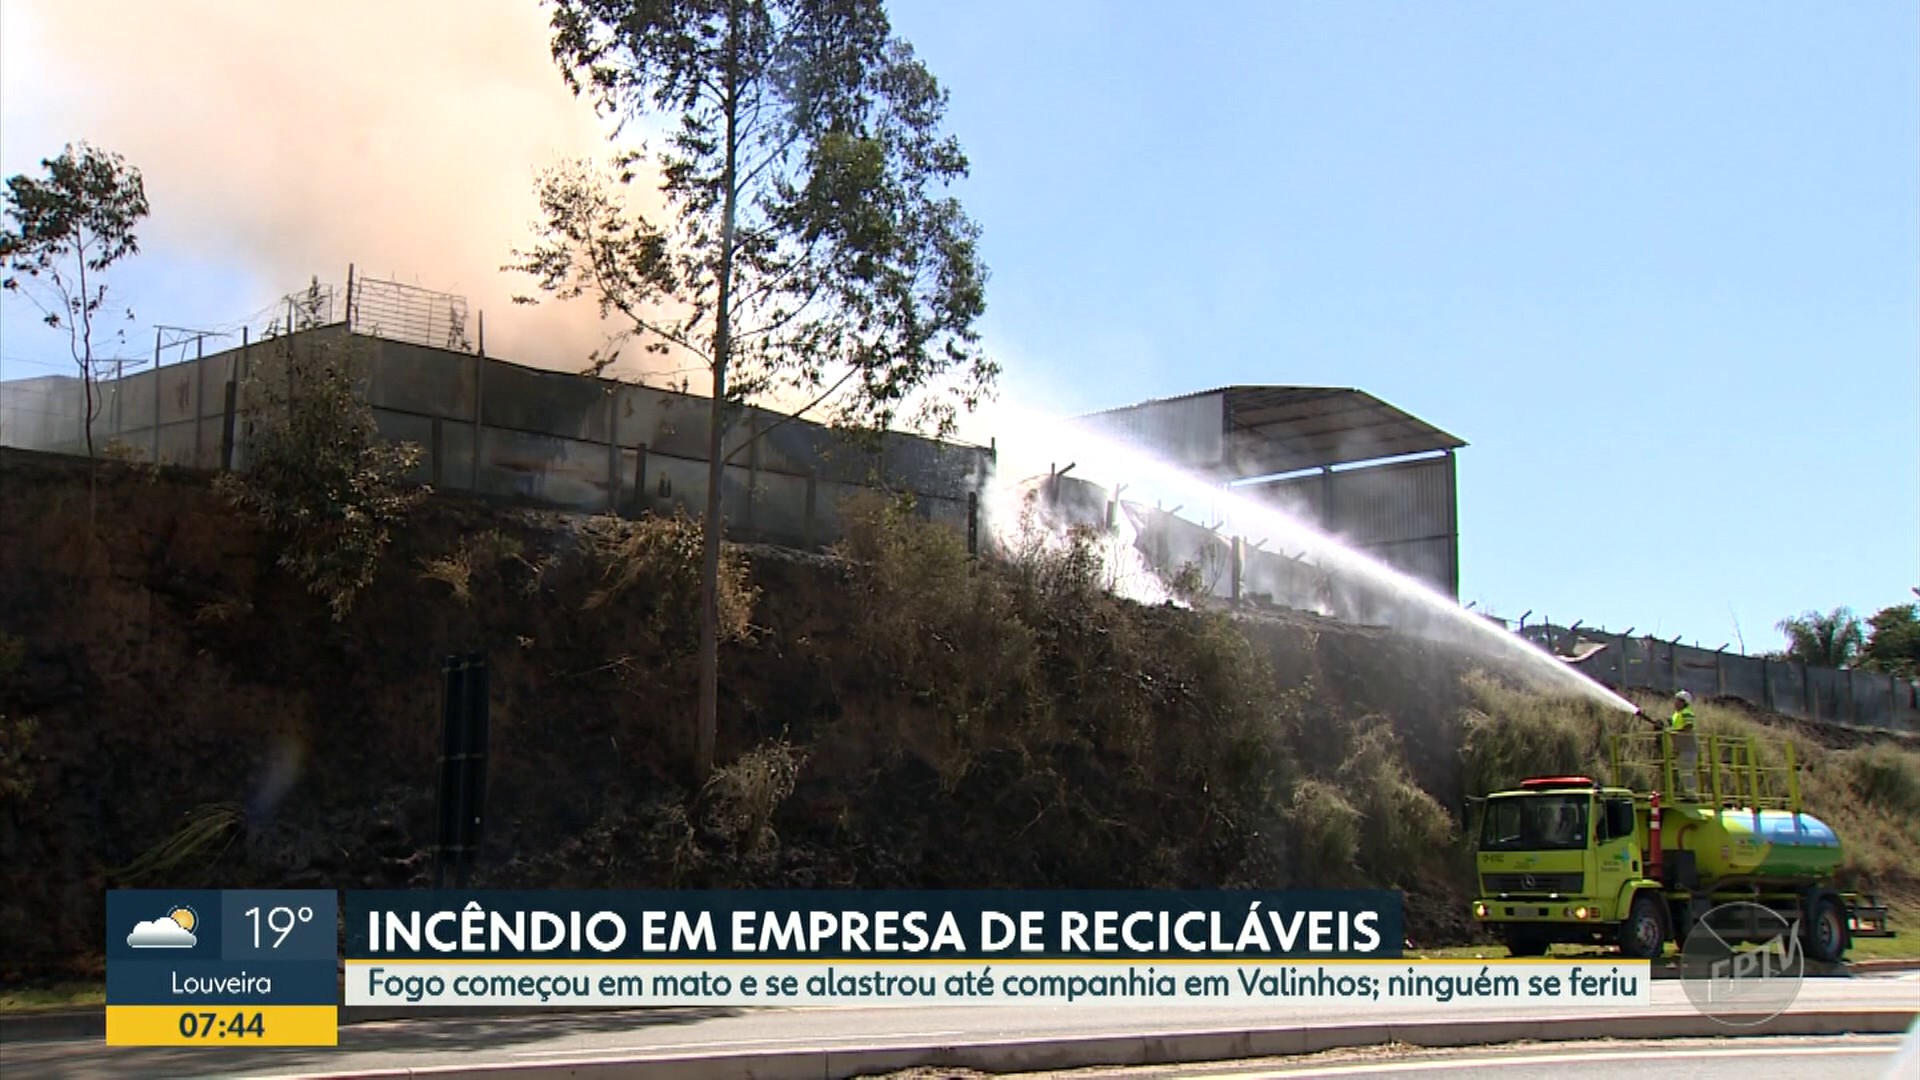 Fogo que começou em mato causa incêndio em empresa de reciclagem em Valinhos